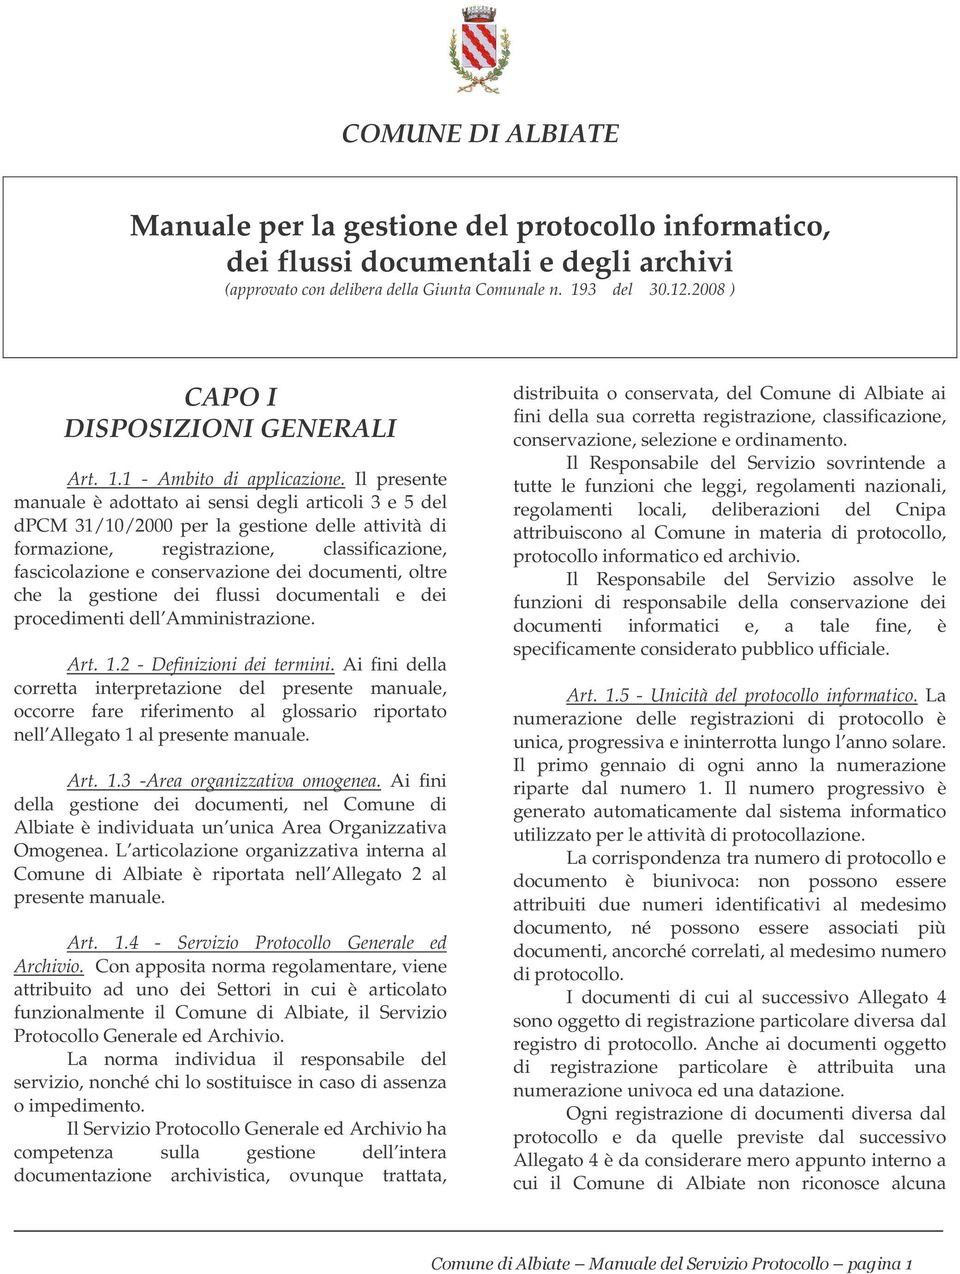 Il presente manuale è adottato ai sensi degli articoli 3 e 5 del dpcm 31/10/2000 per la gestione delle attività di formazione, registrazione, classificazione, fascicolazione e conservazione dei